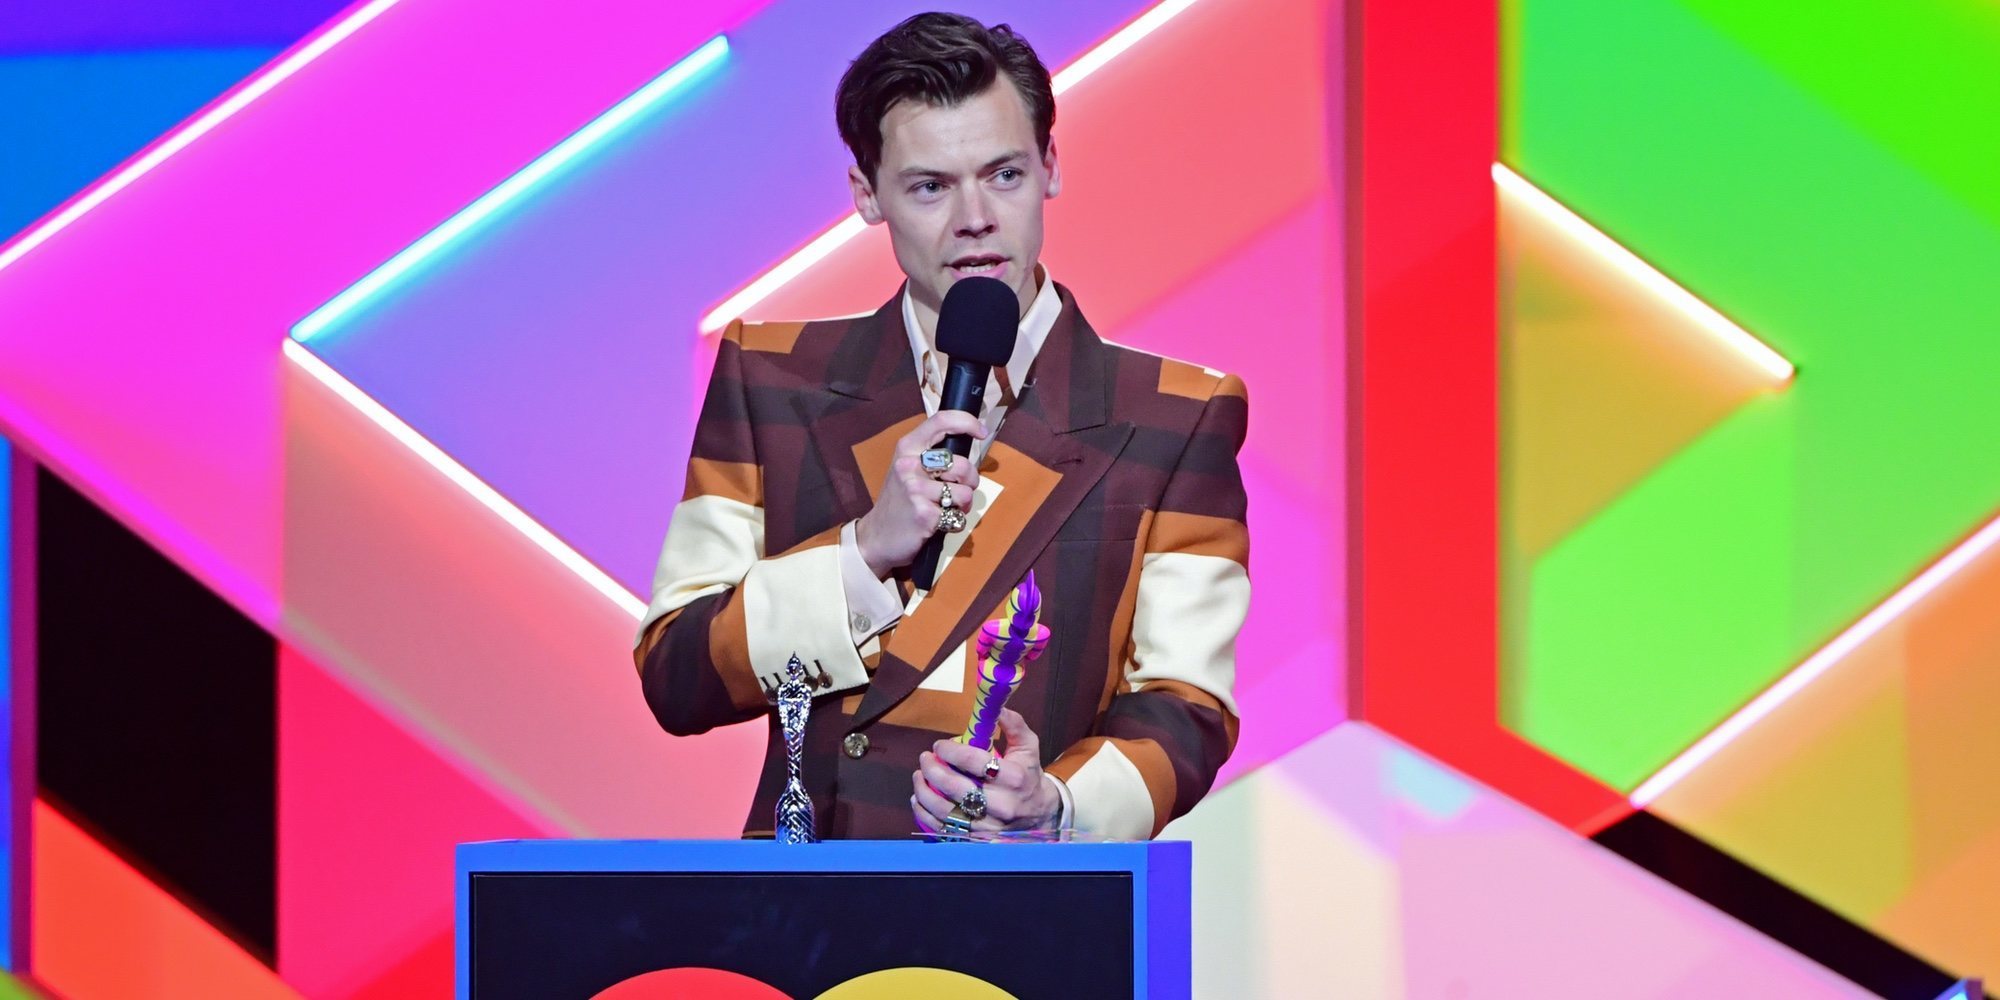 El acento americano de Harry Styles al recoger su premio, la anécdota de los Brit Awards 2021